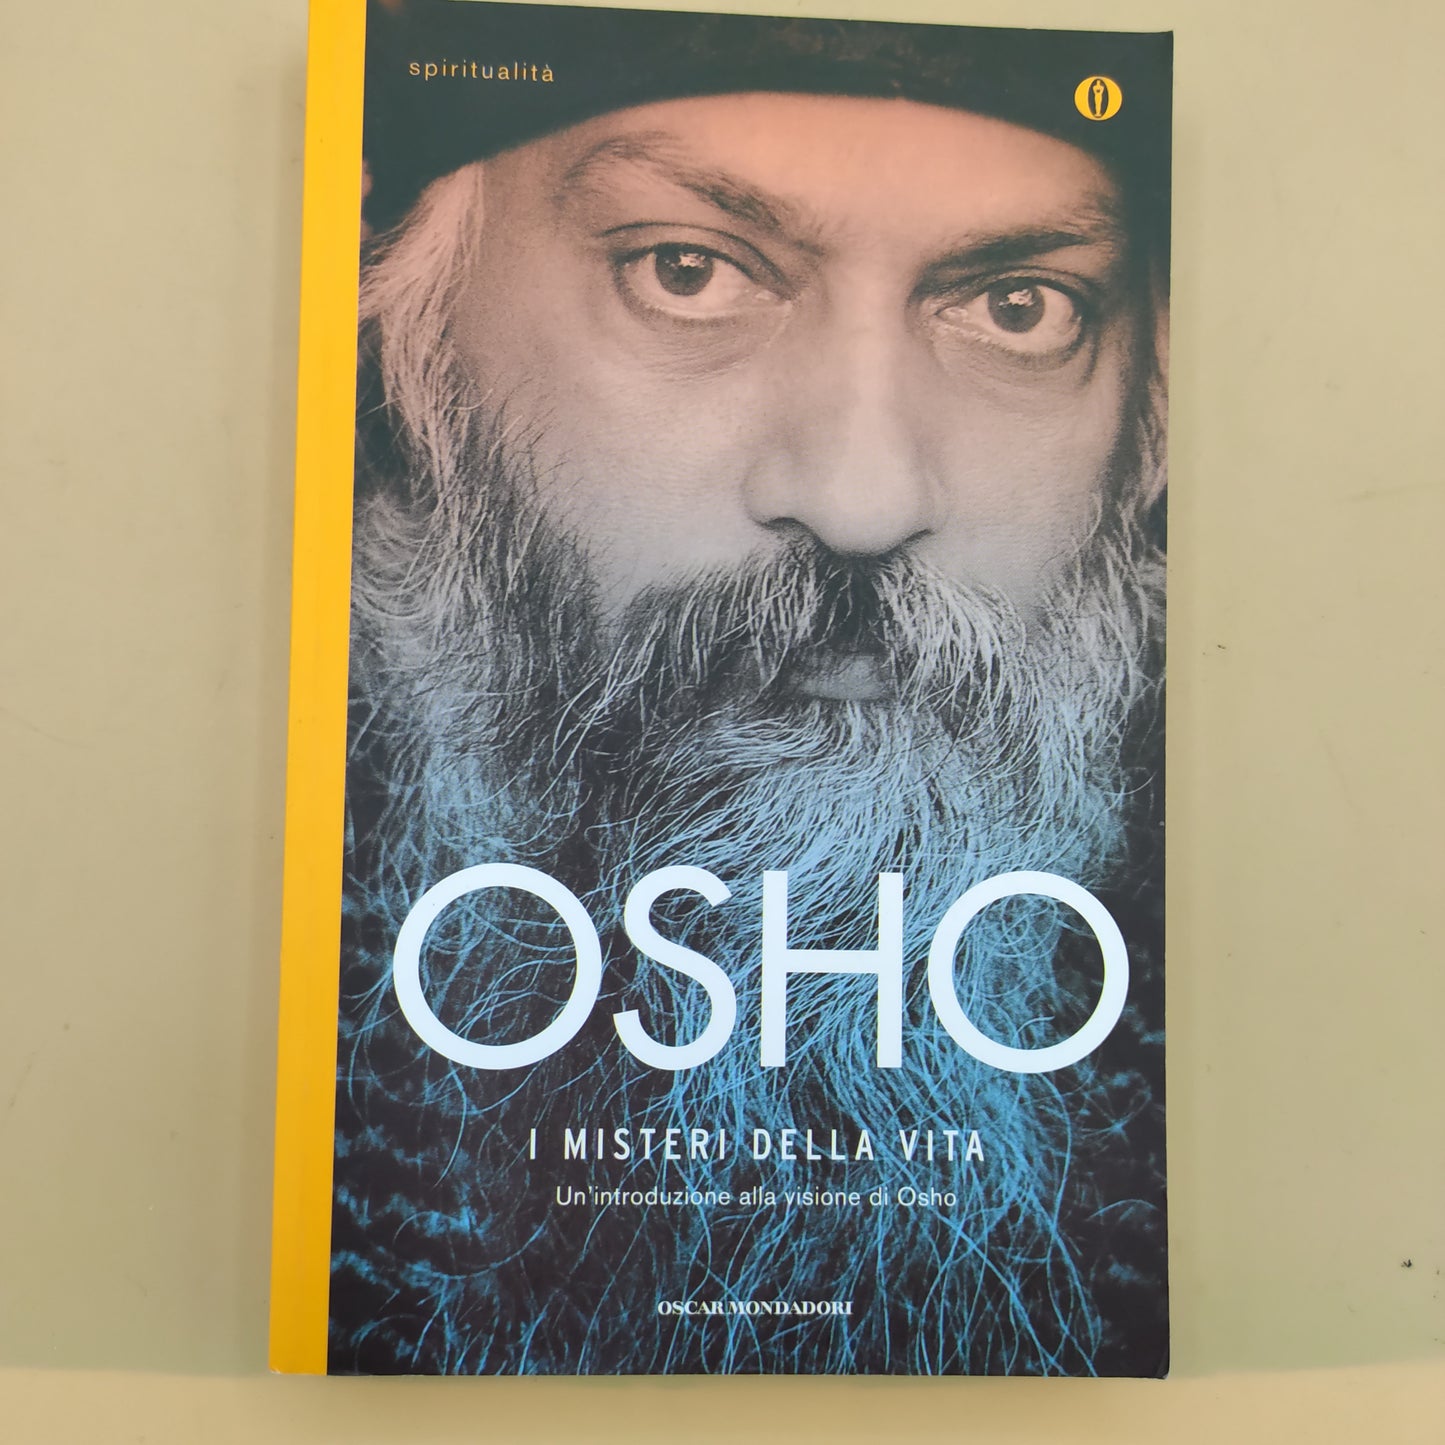 Die Geheimnisse des Lebens. Eine Einführung in Oshos Vision – Osho